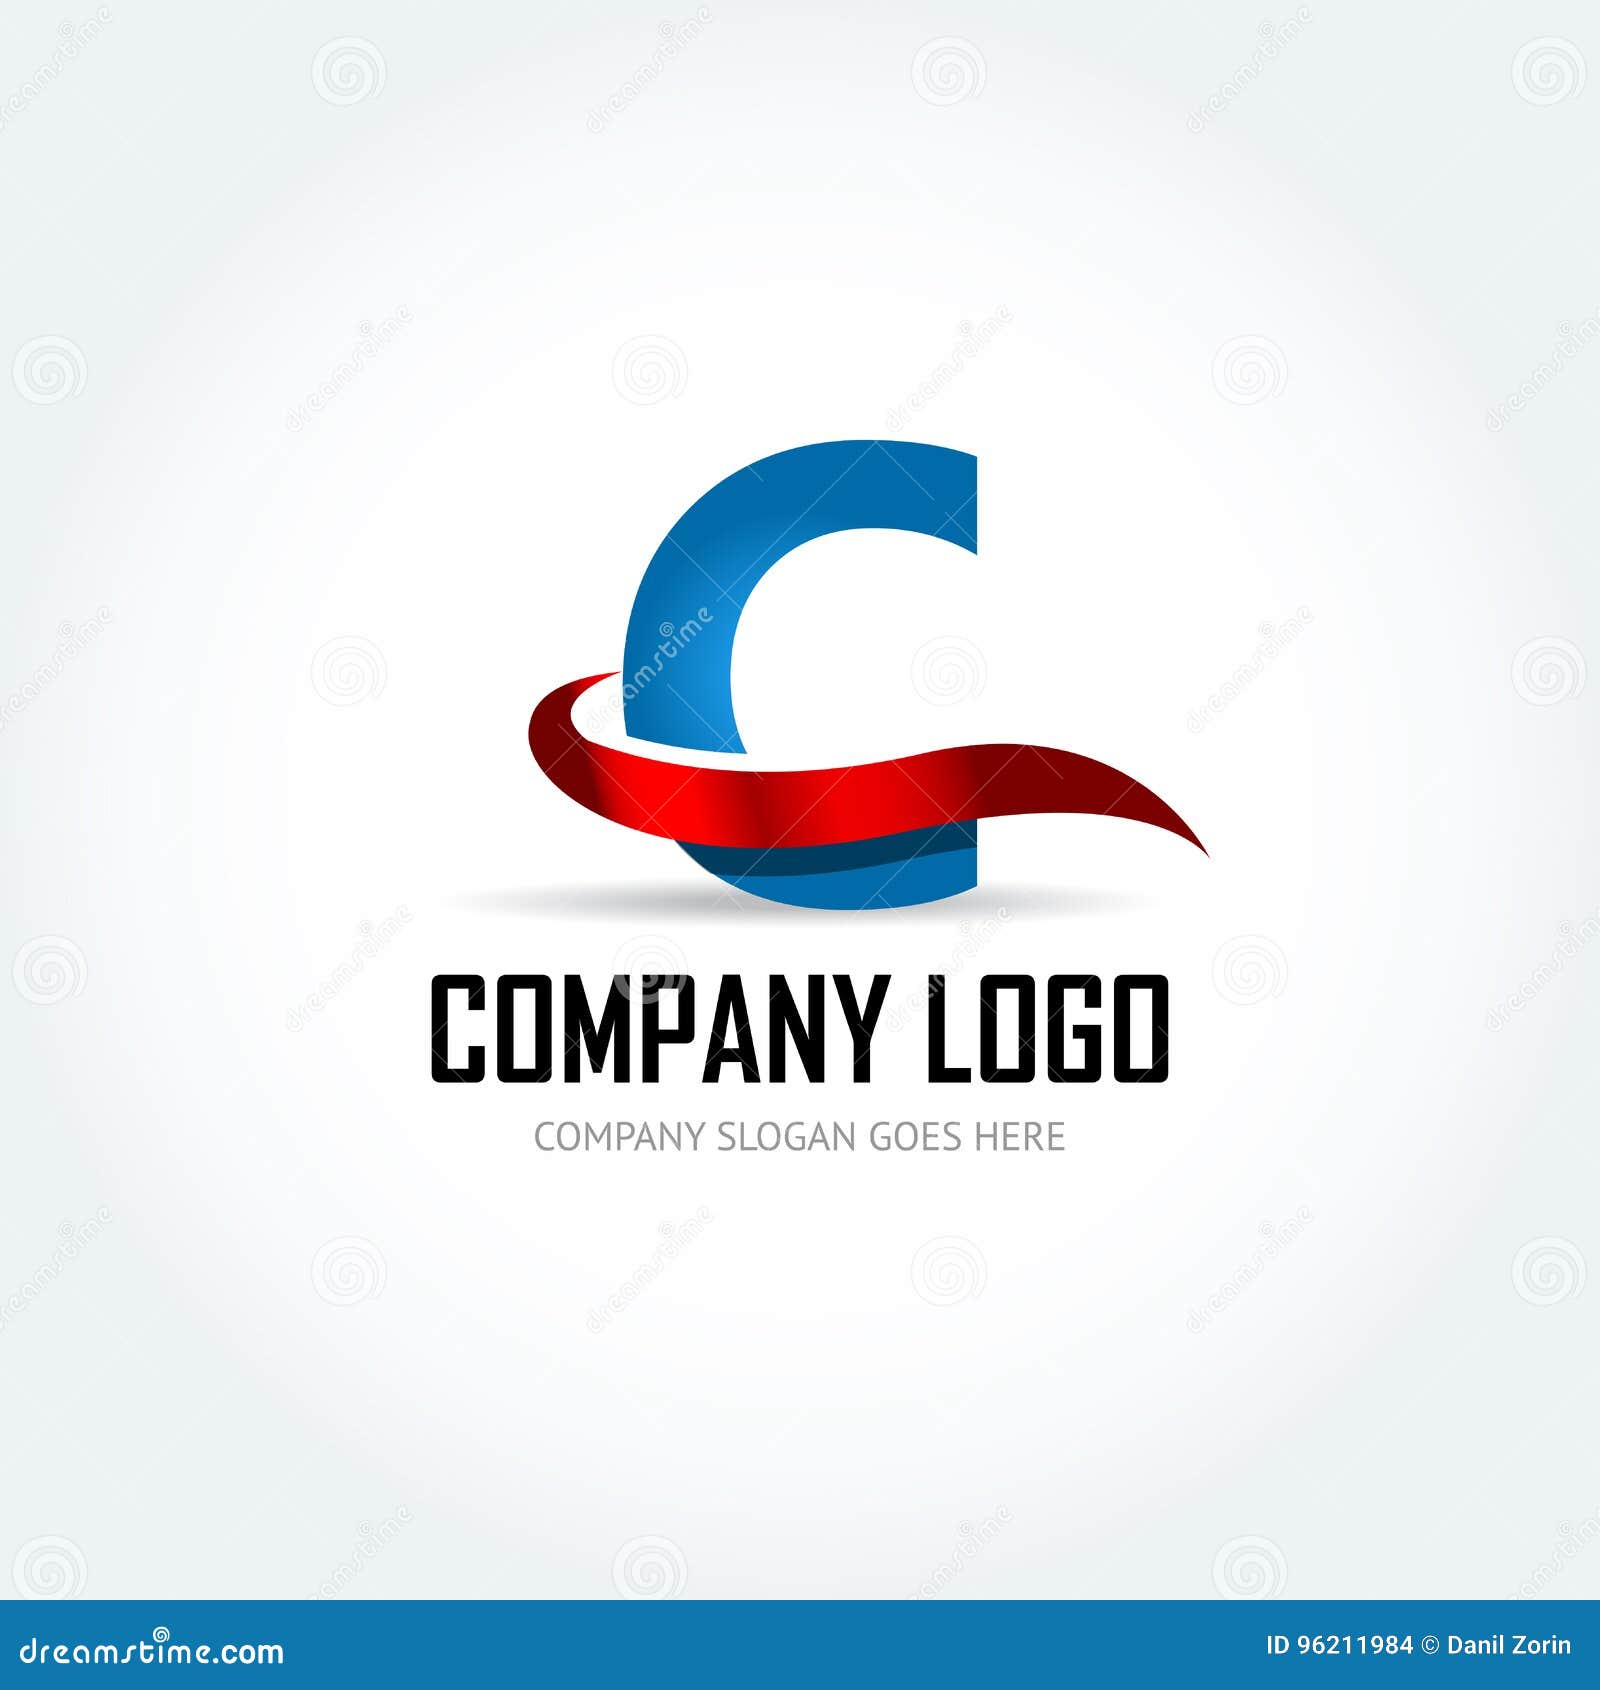 Сине красный логотип. Красно синий логотип. Красно синие логотипы компаний. Компании с красным лого. Красно голубой логотип компании.